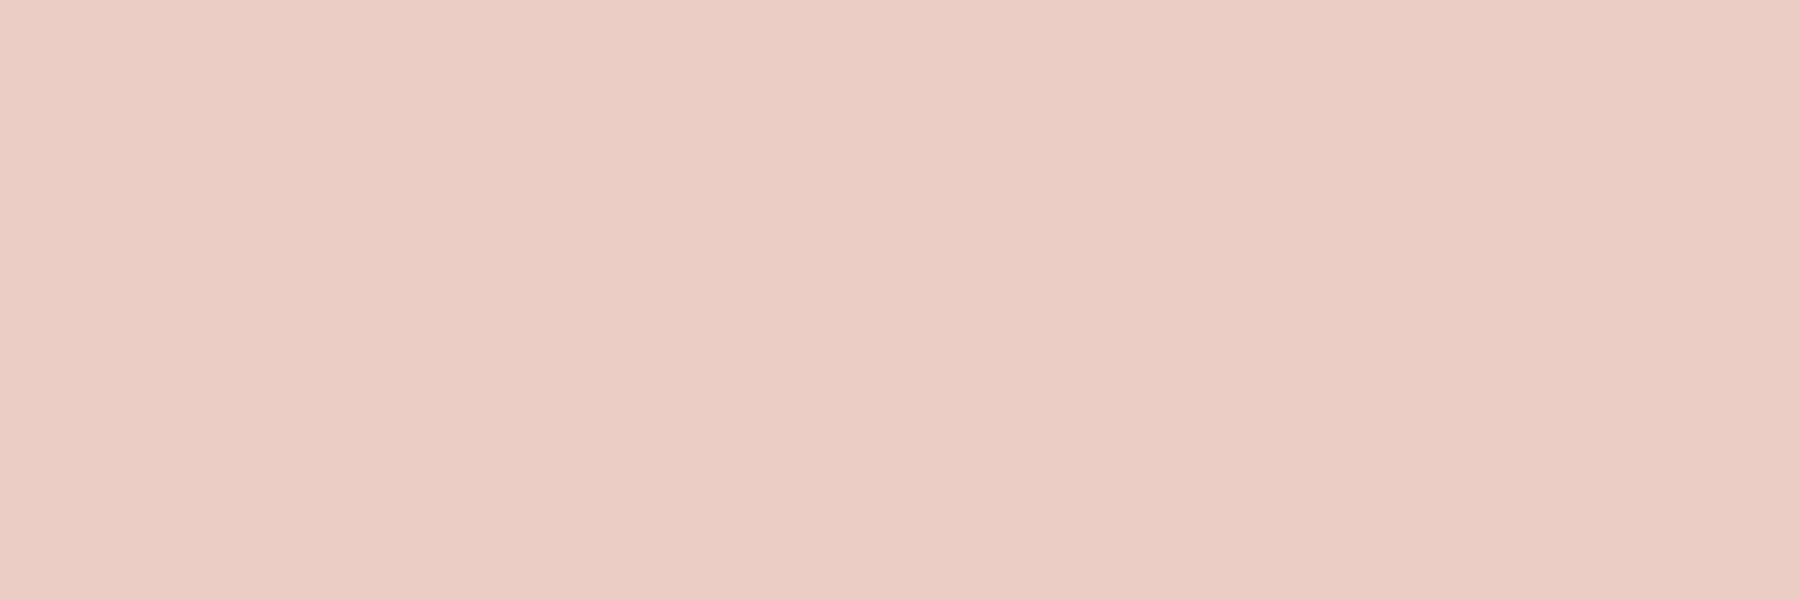 Teami pink background desktop banner